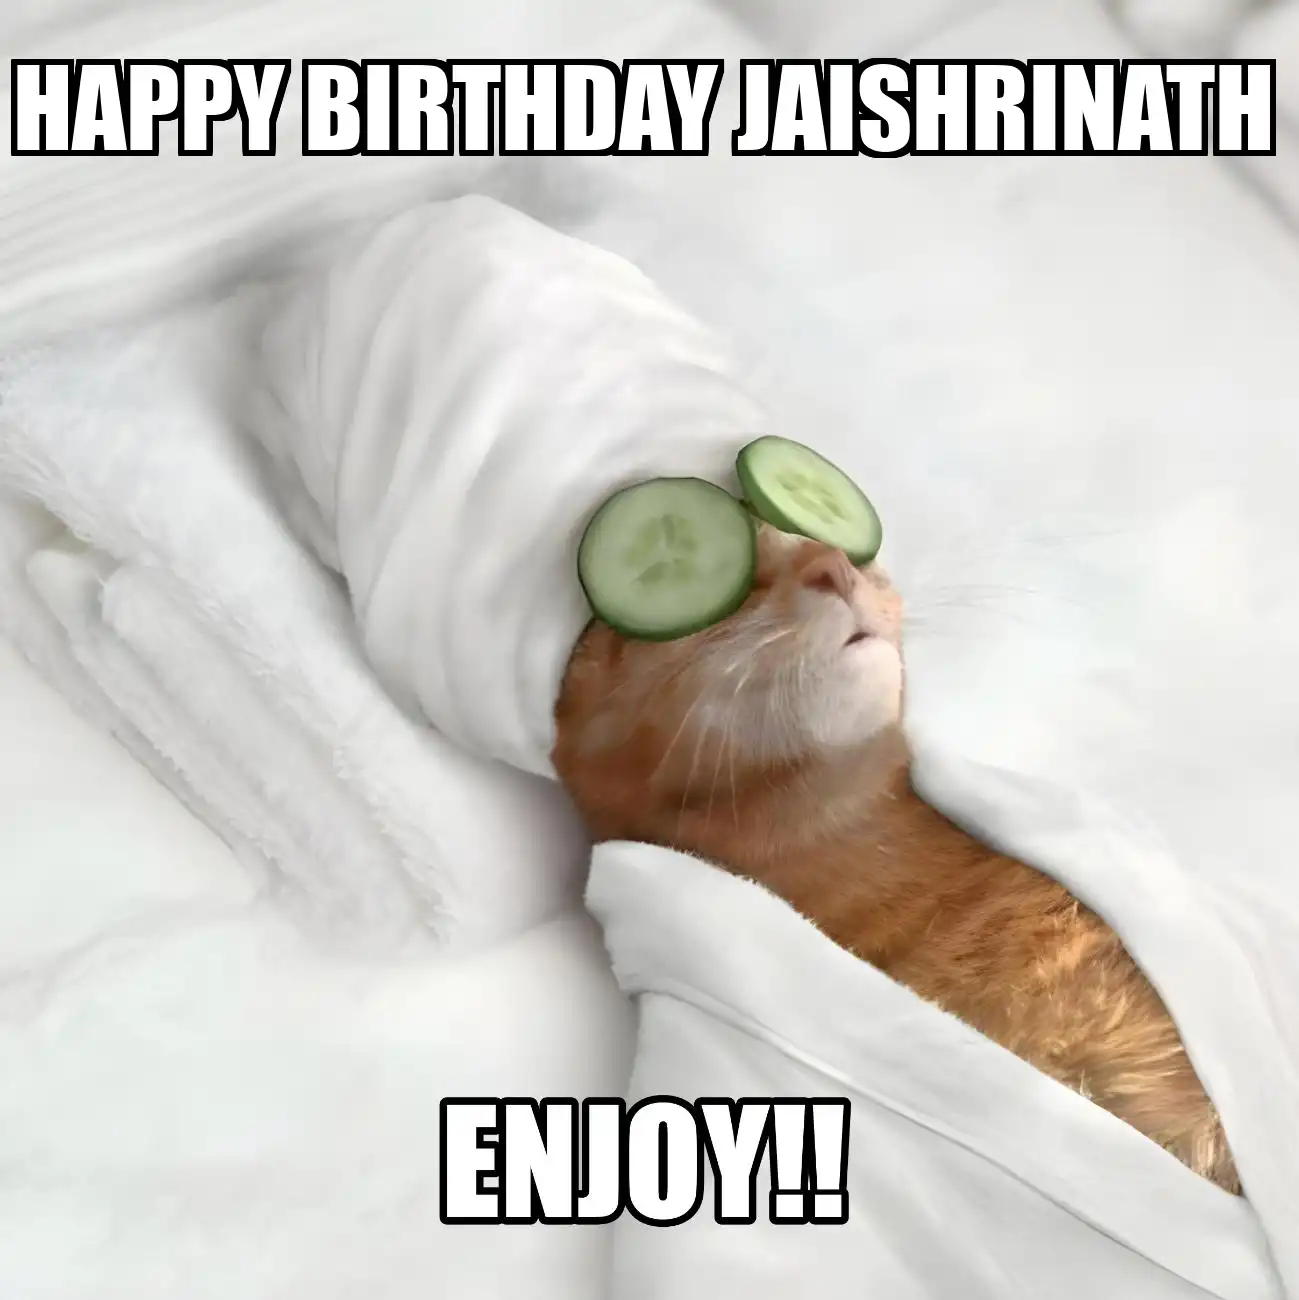 Happy Birthday Jaishrinath Enjoy Cat Meme